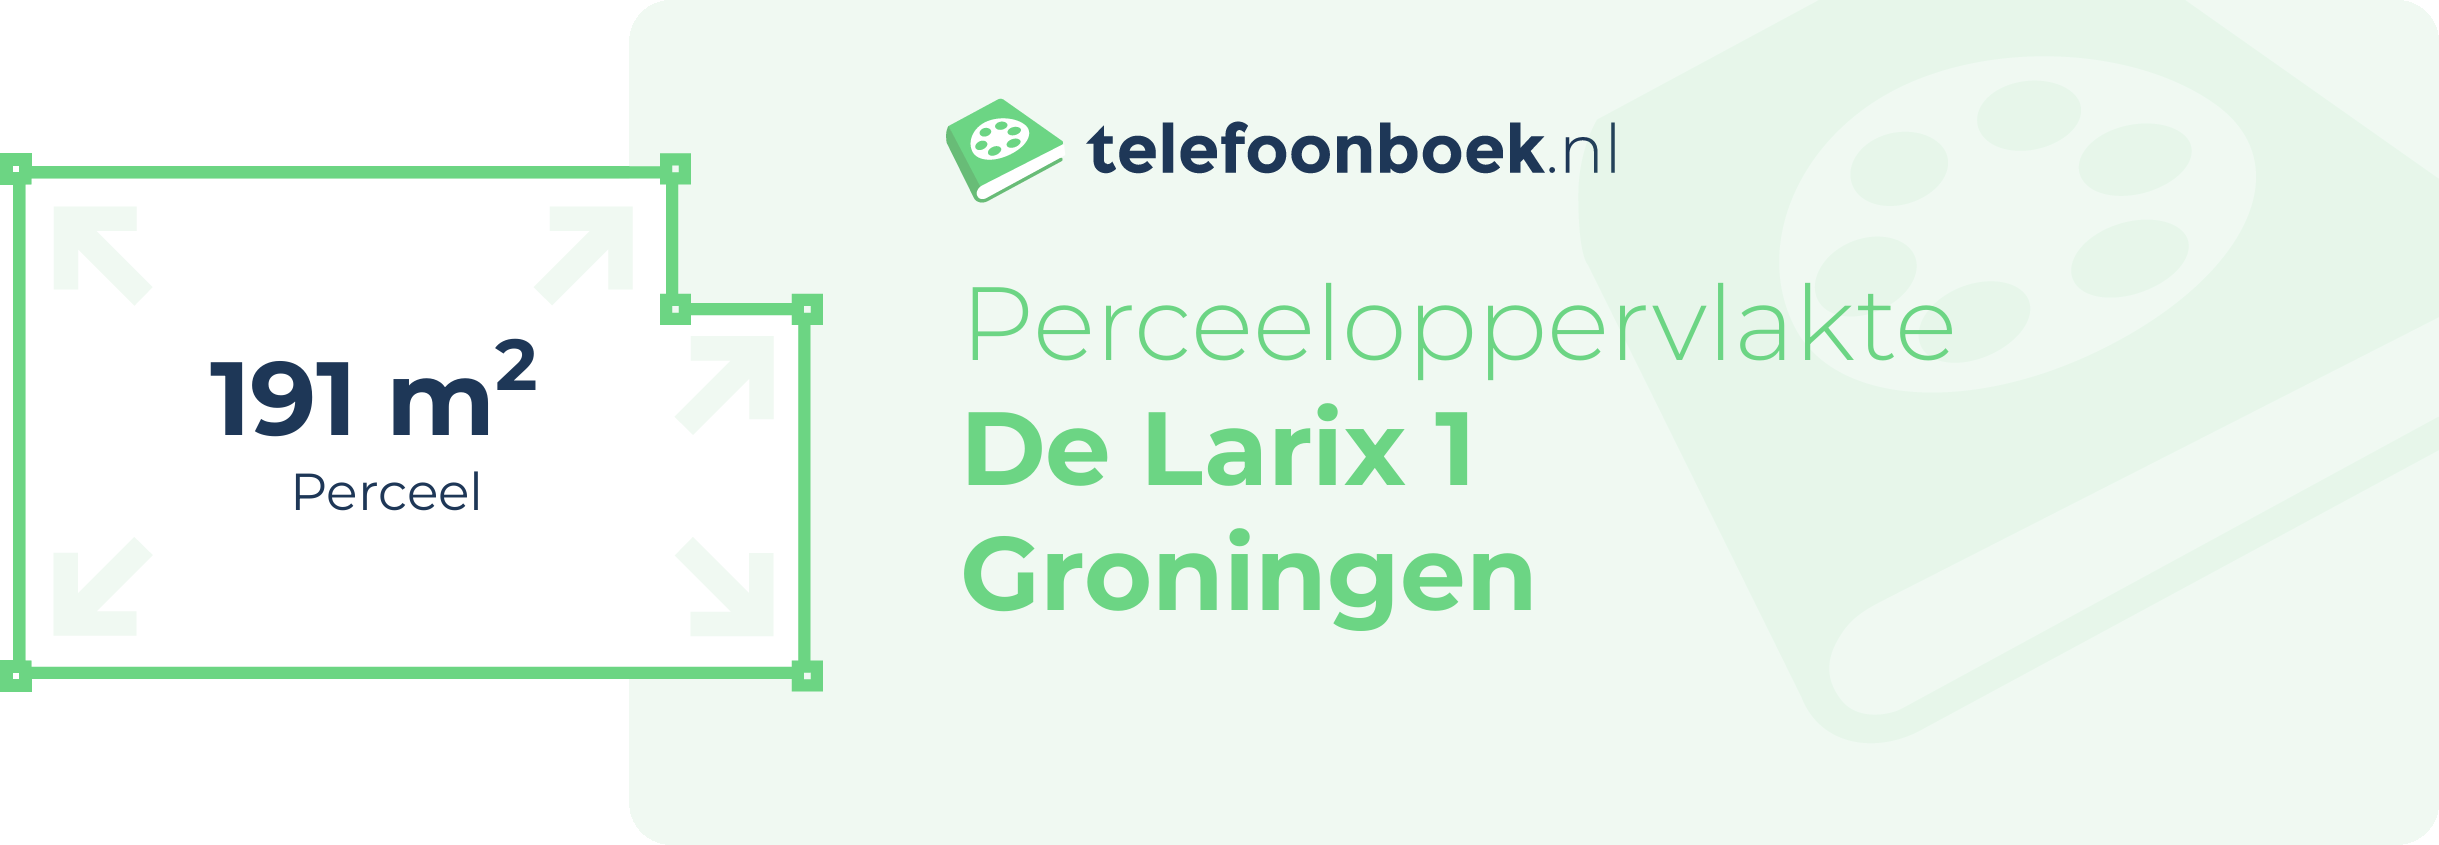 Perceeloppervlakte De Larix 1 Groningen